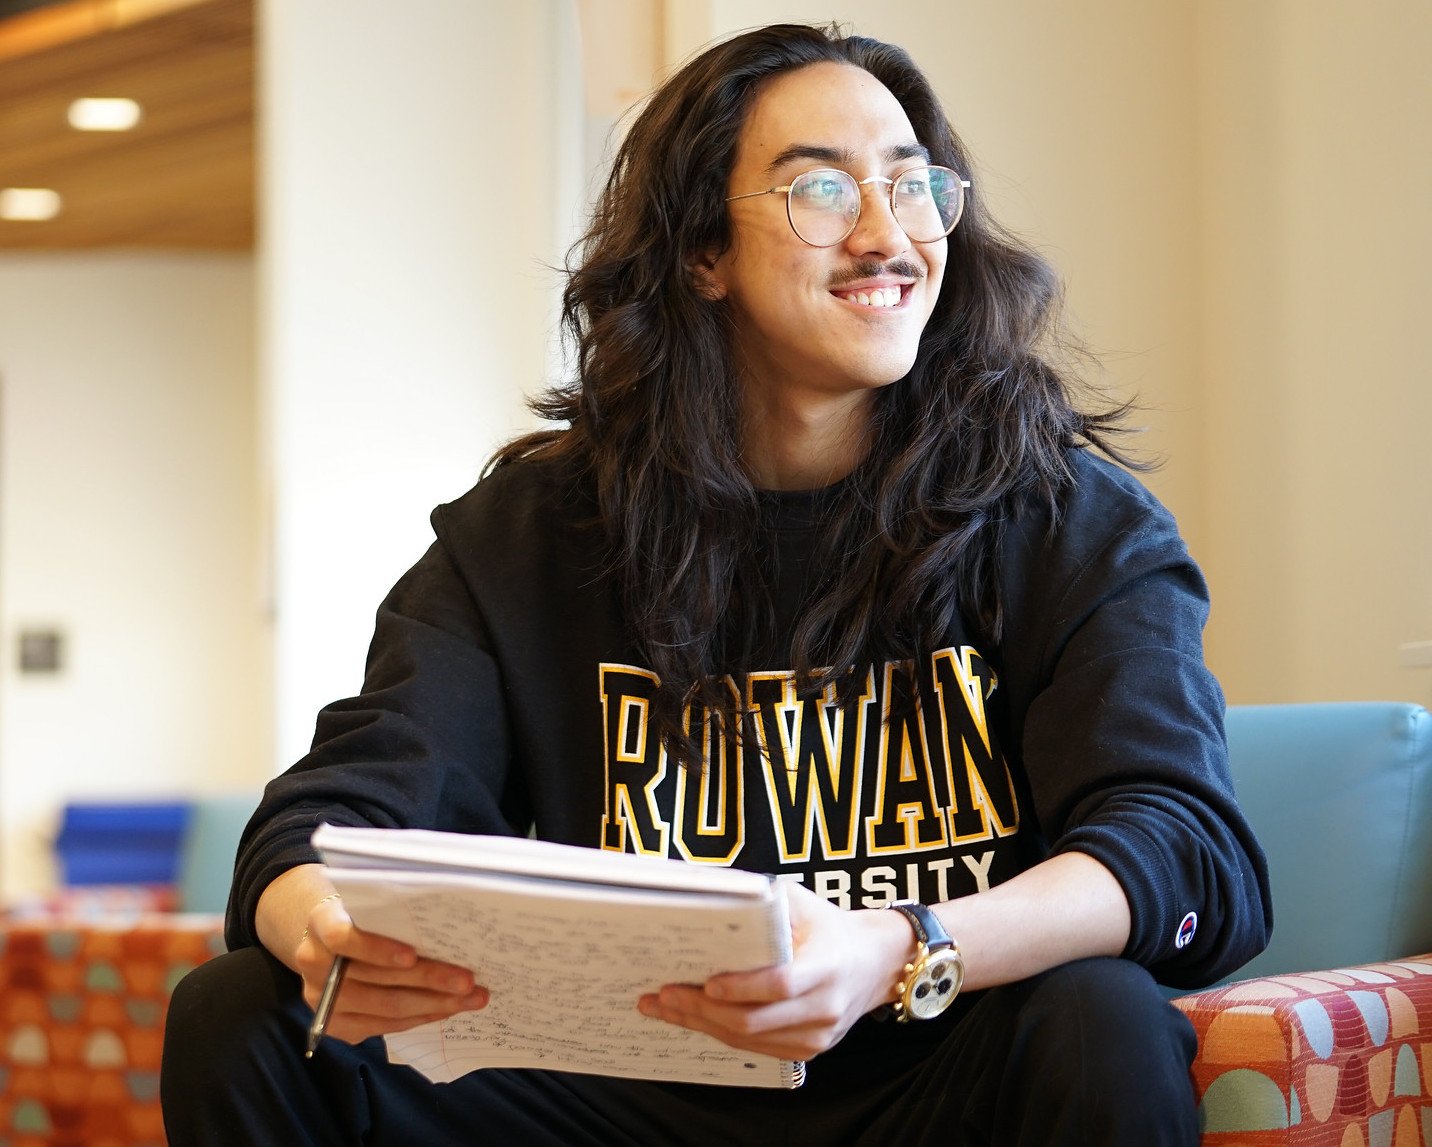 A student in a Rowan shirt holding a notebook.